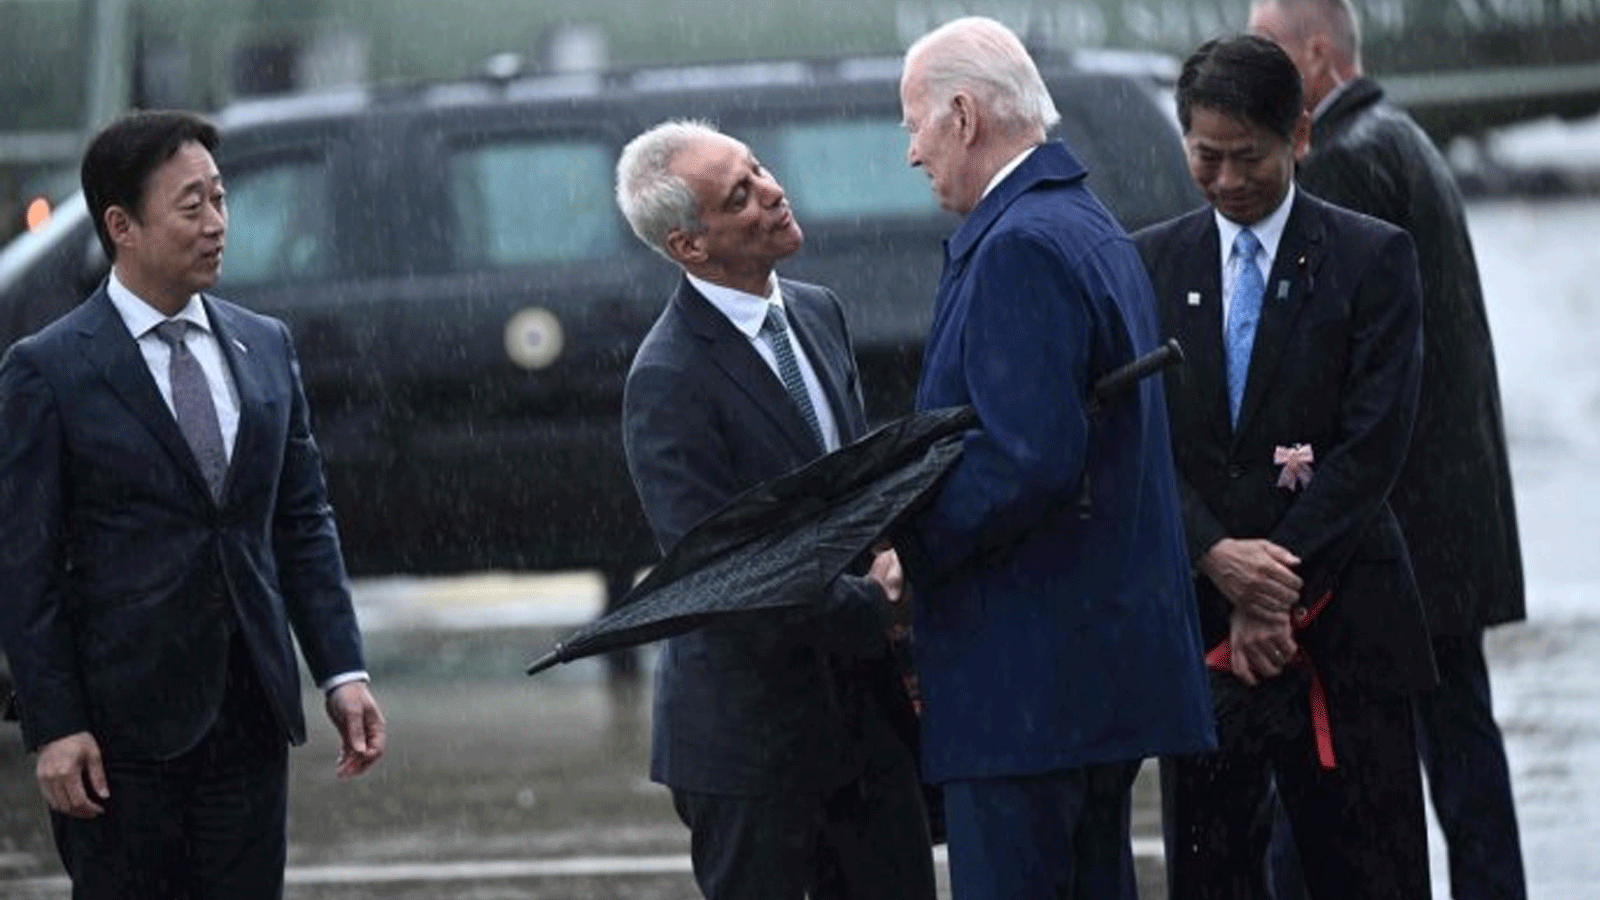 الرئيس الأميركي جو بايدن (وسط الصورة) يصافح السفير الأميركي لدى اليابان رام إيمانويل (وسط) عند وصوله إلى قاعدة مشاة البحرية الأميركية في إيواكوني. 18 ايار\مايو 2023، قبيل قمة قادة مجموعة السبع في هيروشيما